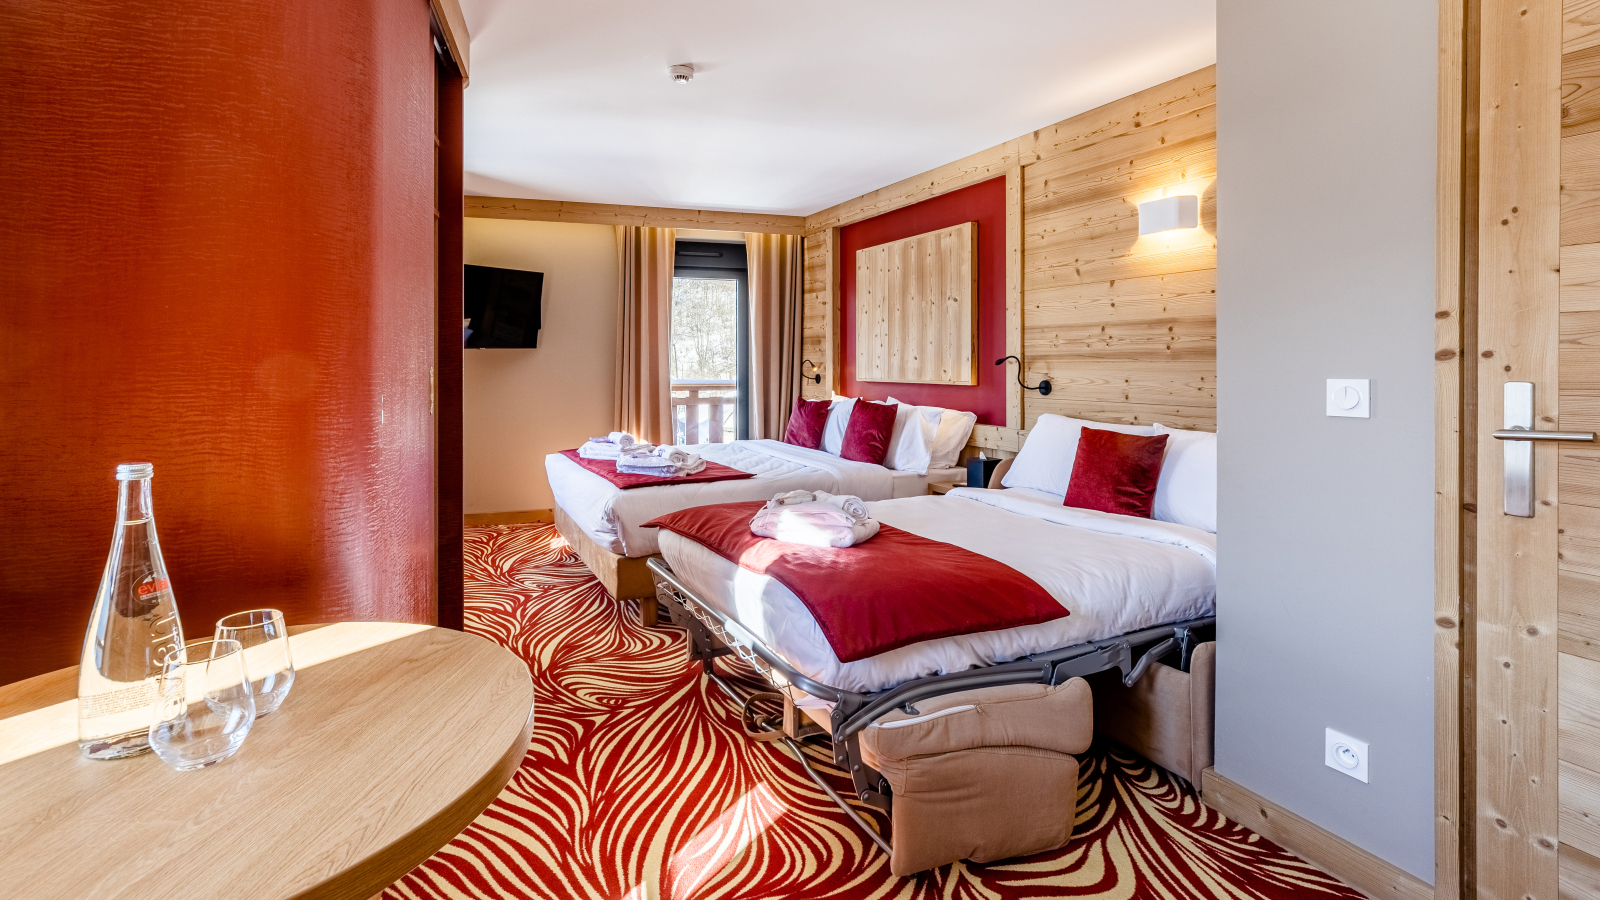 Chambre avec deux lits double et couvre lit rouge. Moquette rouge et beige et coin café.